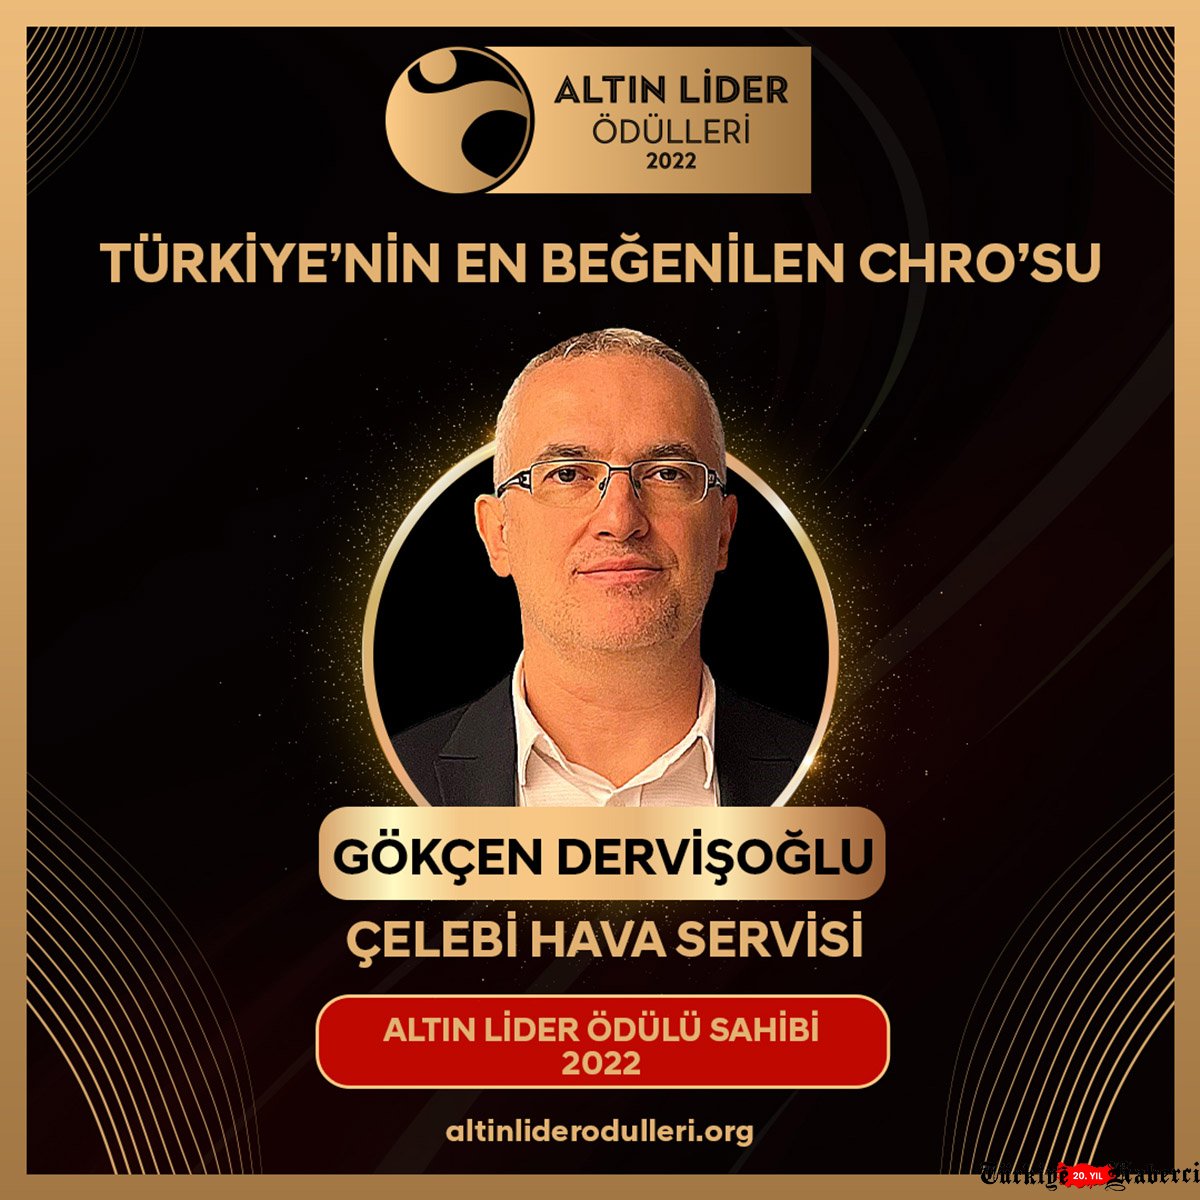  Gökçen Dervişoğlu, Türkiye'nin En Beğenilen Altın Lideri seçildi.